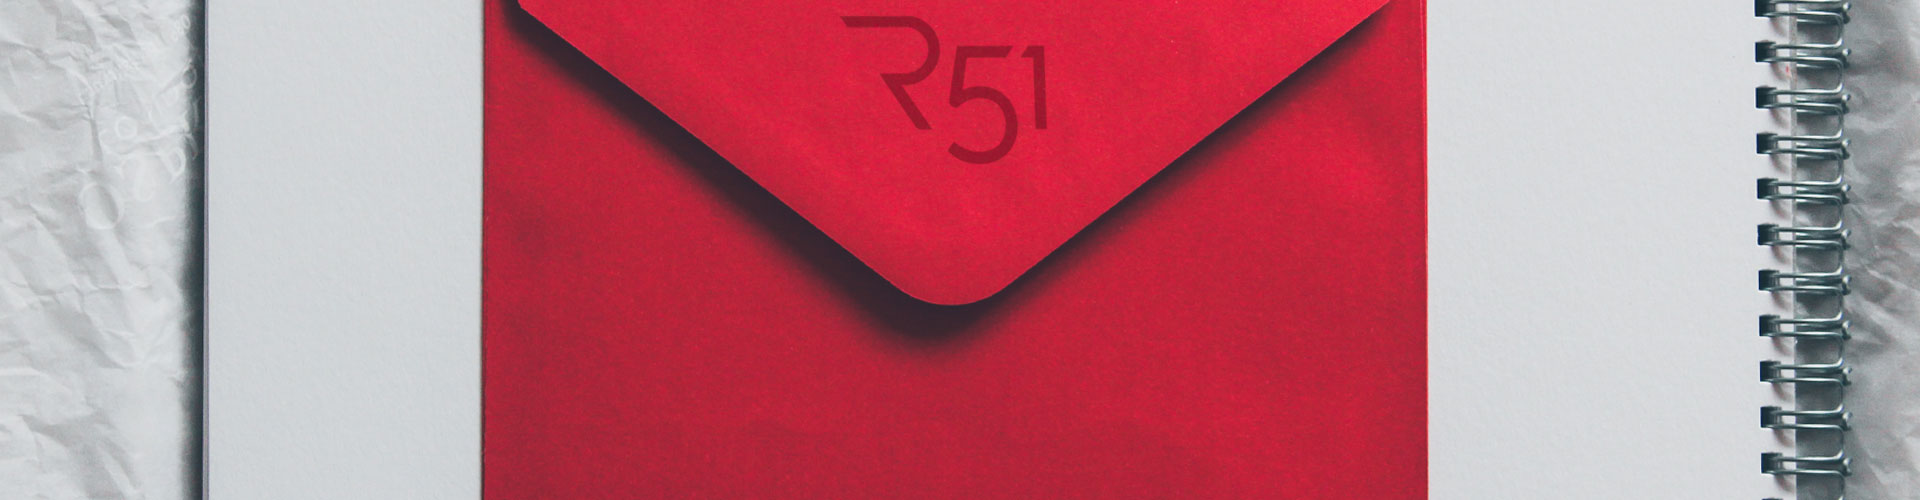 Headerbild mit einem roten Briefumschlag